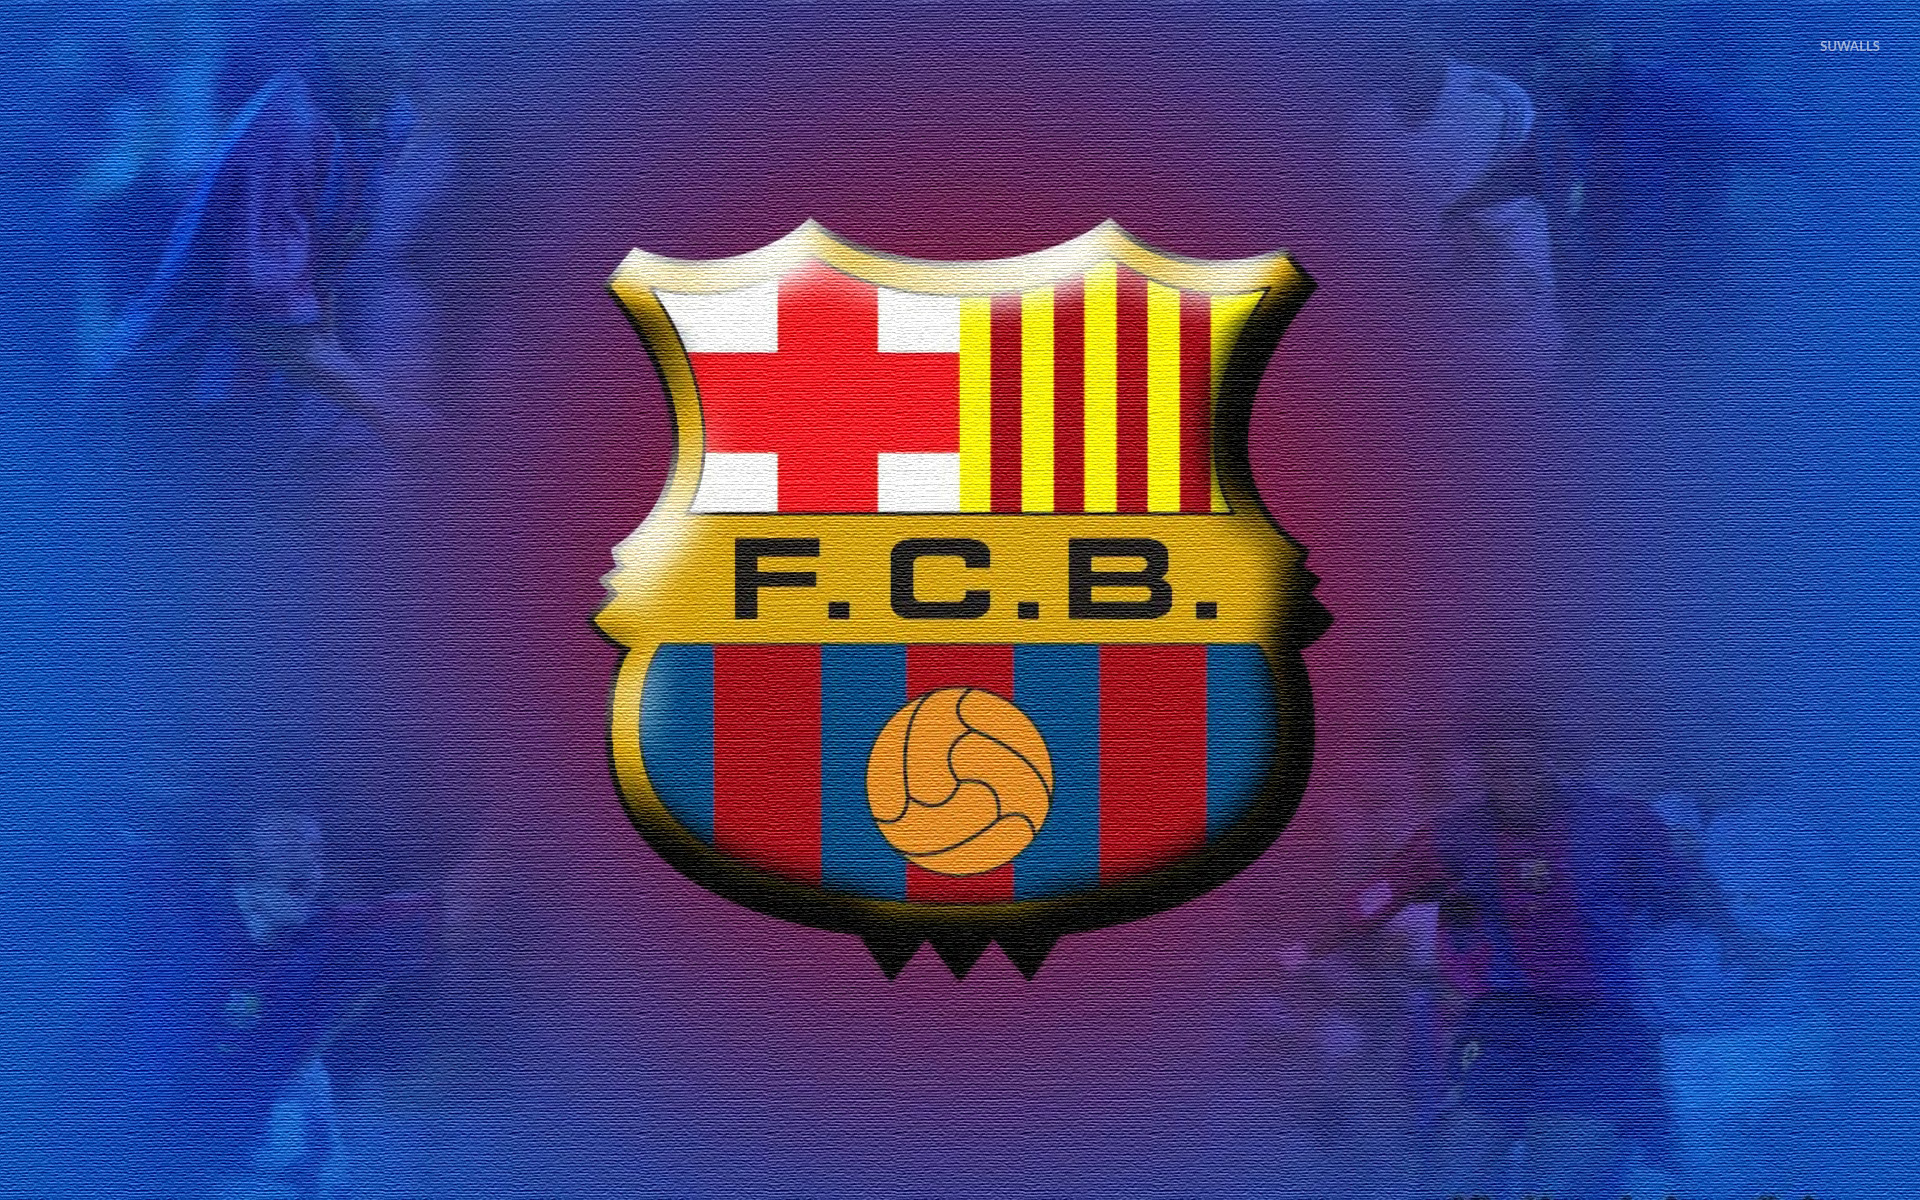 barcelona wallpaper,emblem,logo,symbol,font,badge